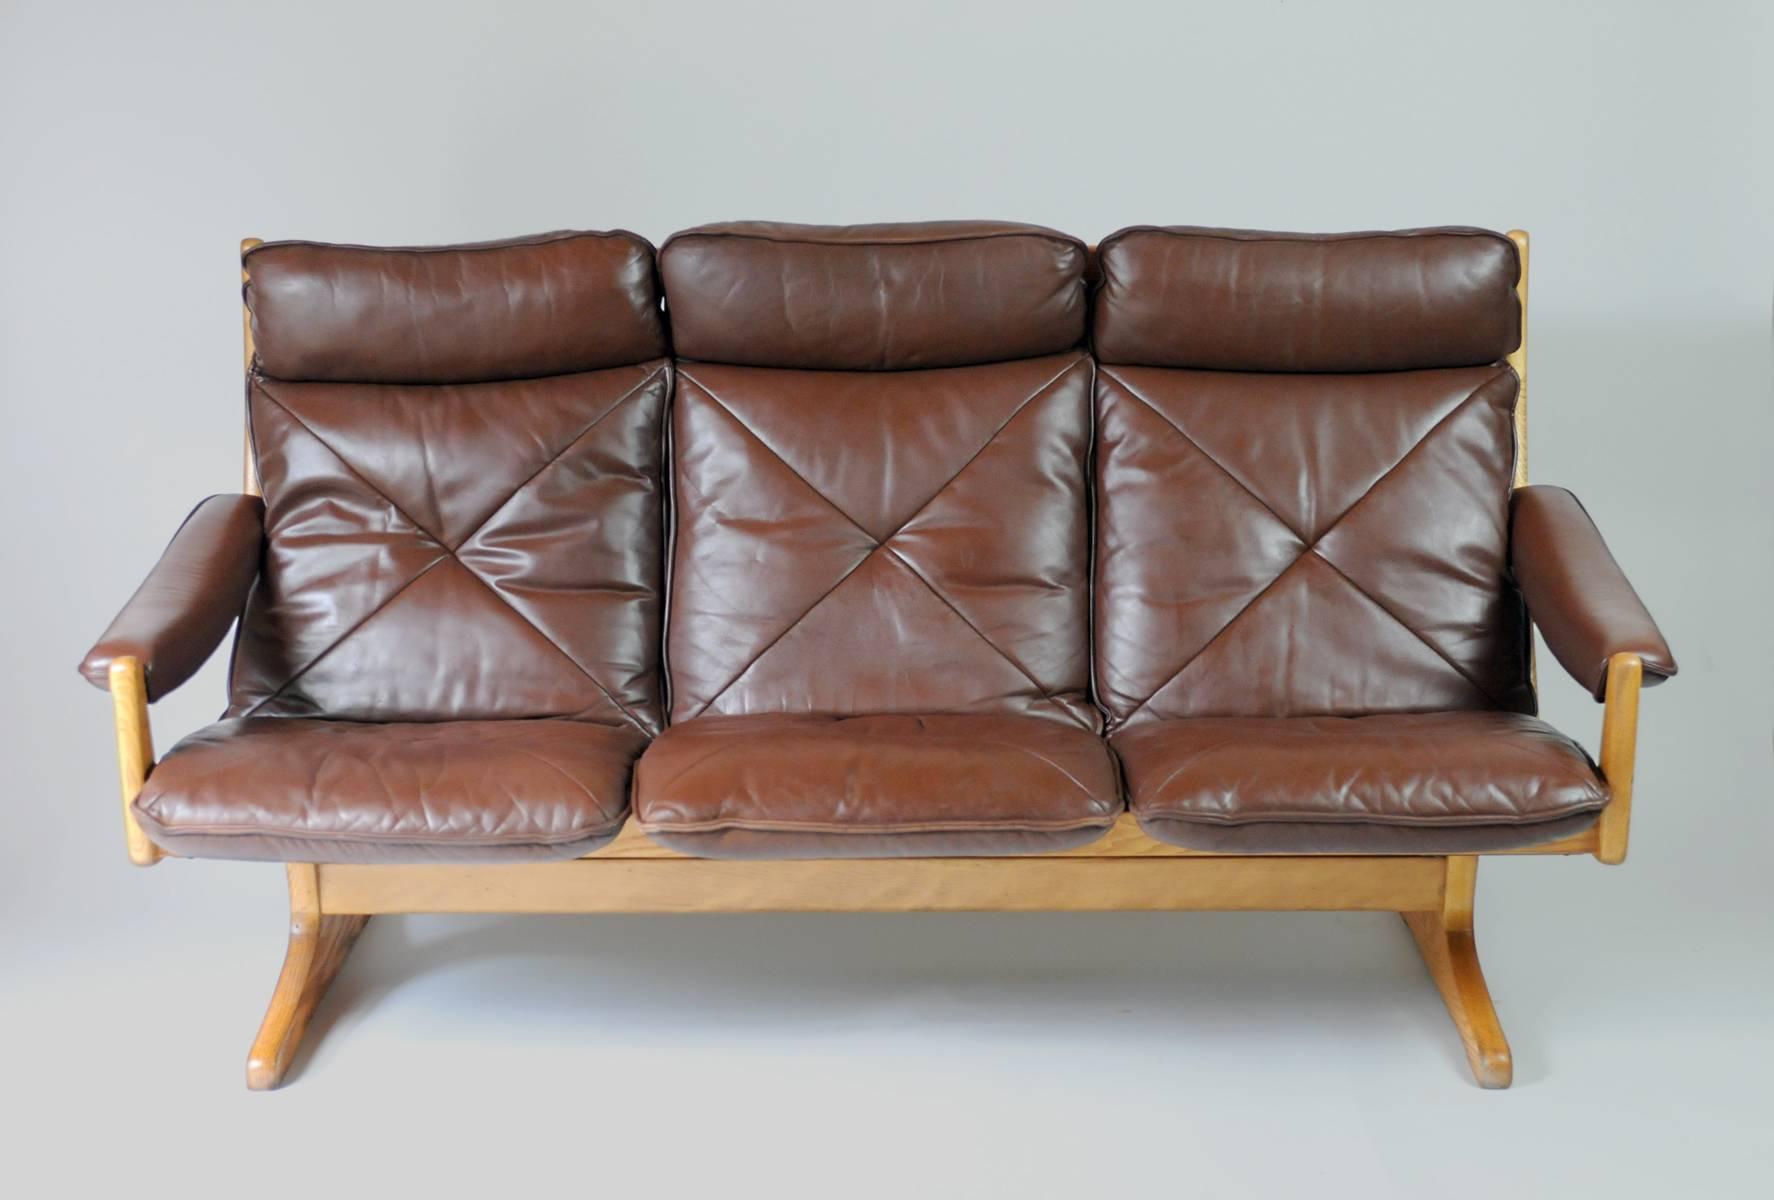 Ce canapé trois places en frêne massif et cuir a été produit en Norvège par Soda Galvano dans les années 1960. Il présente une structure en frêne massif et un revêtement en cuir patiné. Confortable et solidement construit, ce canapé a été restauré.